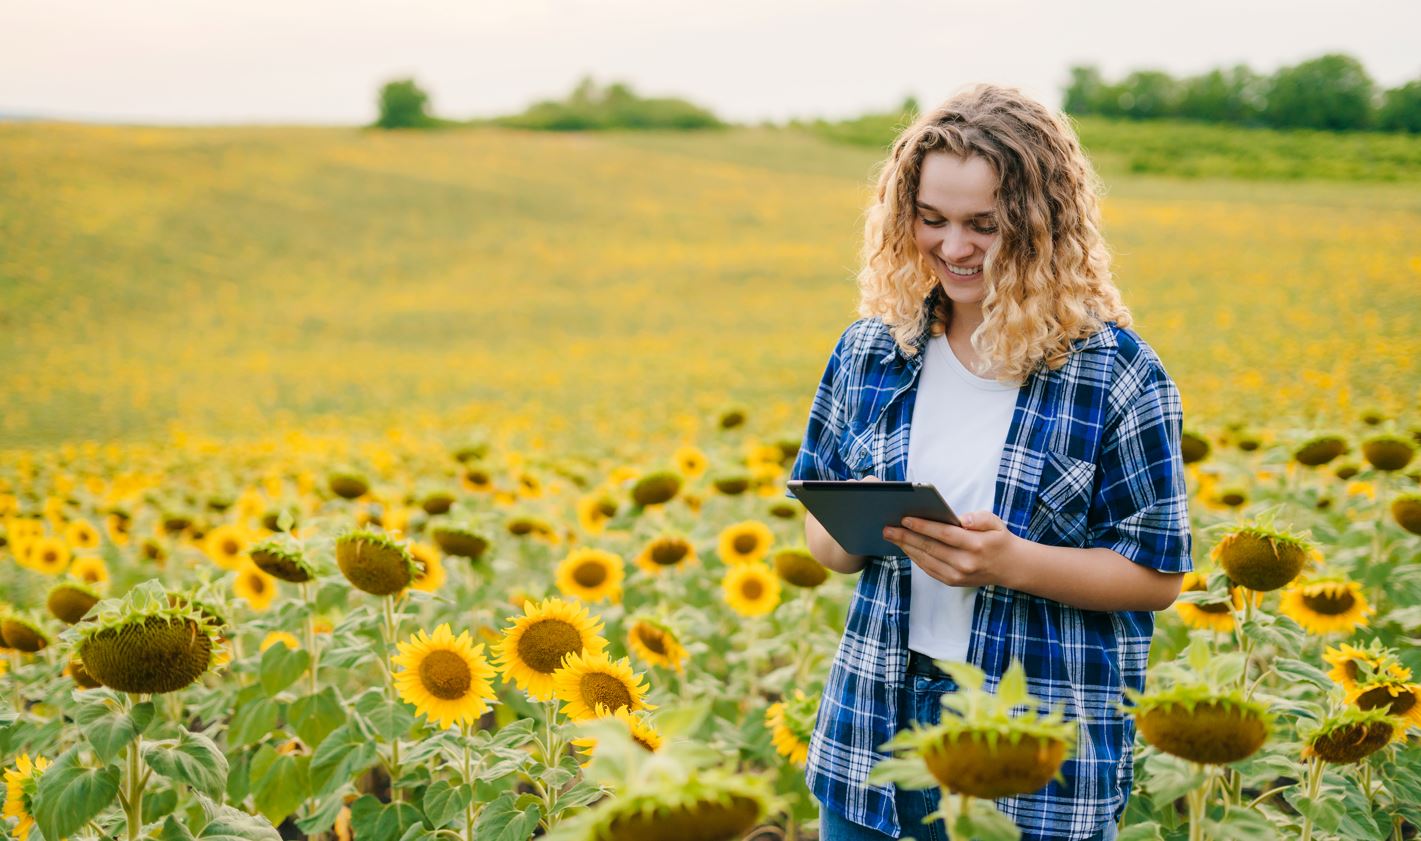 Woman in a sunflower field